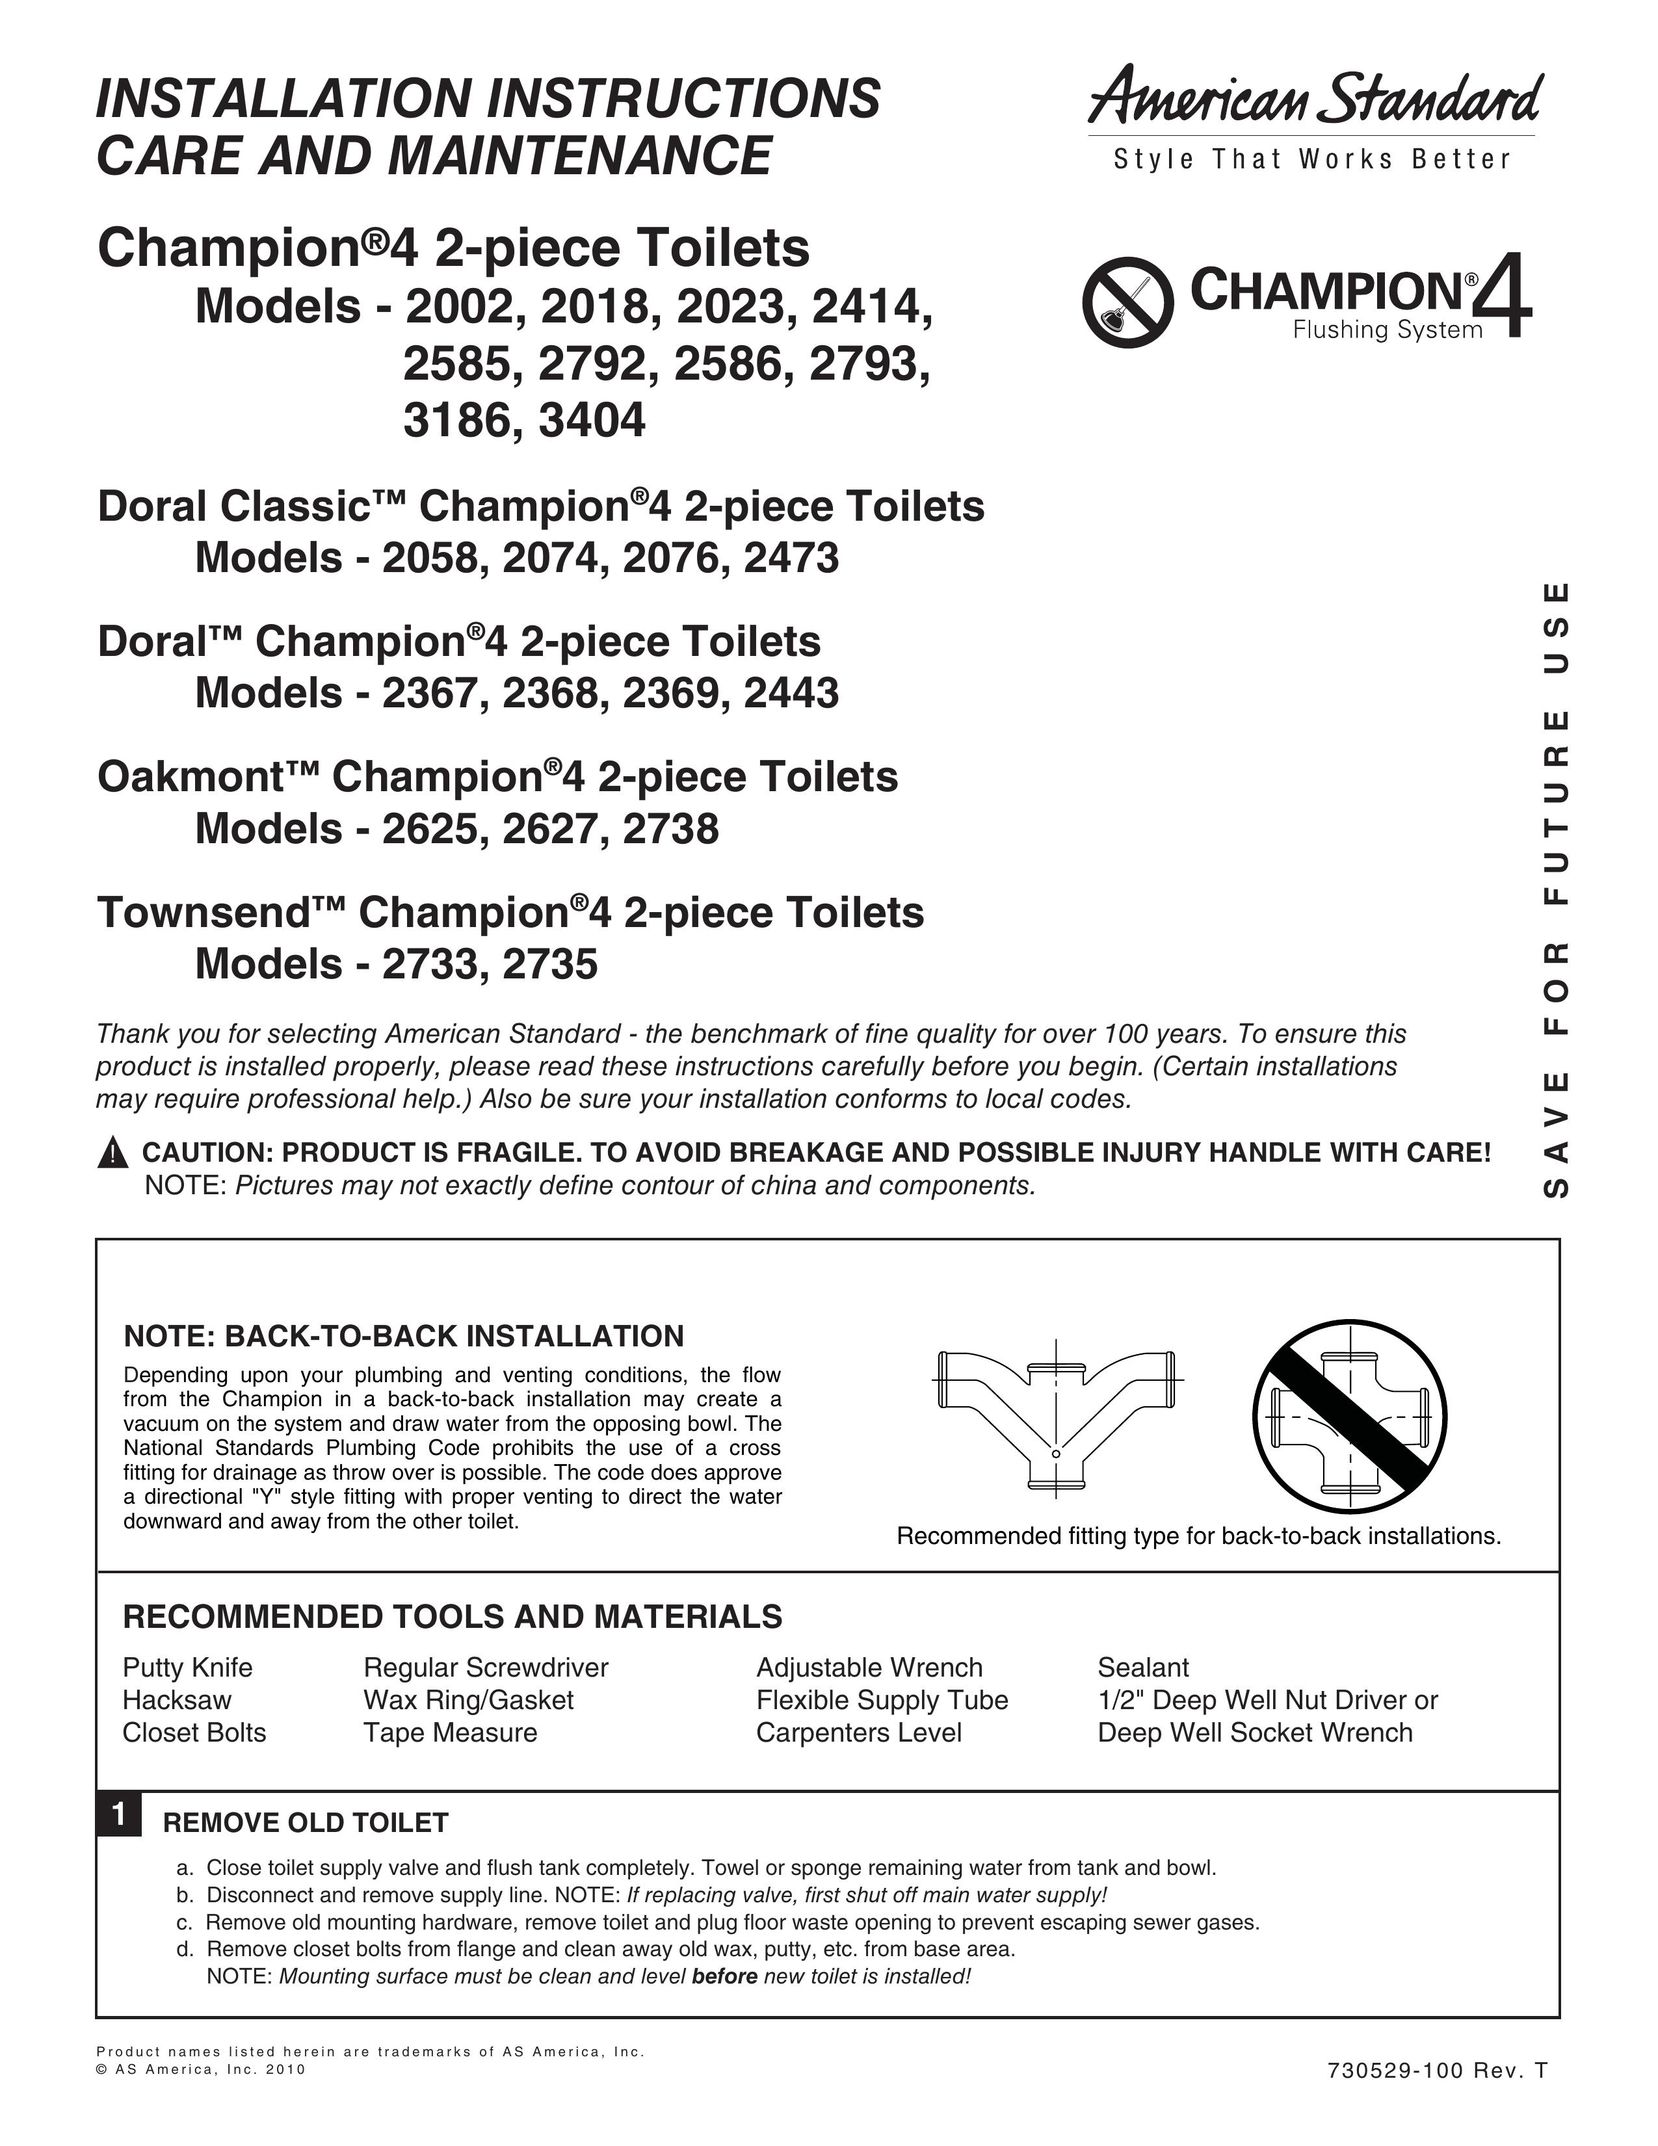 American Standard 2002 Plumbing Product User Manual